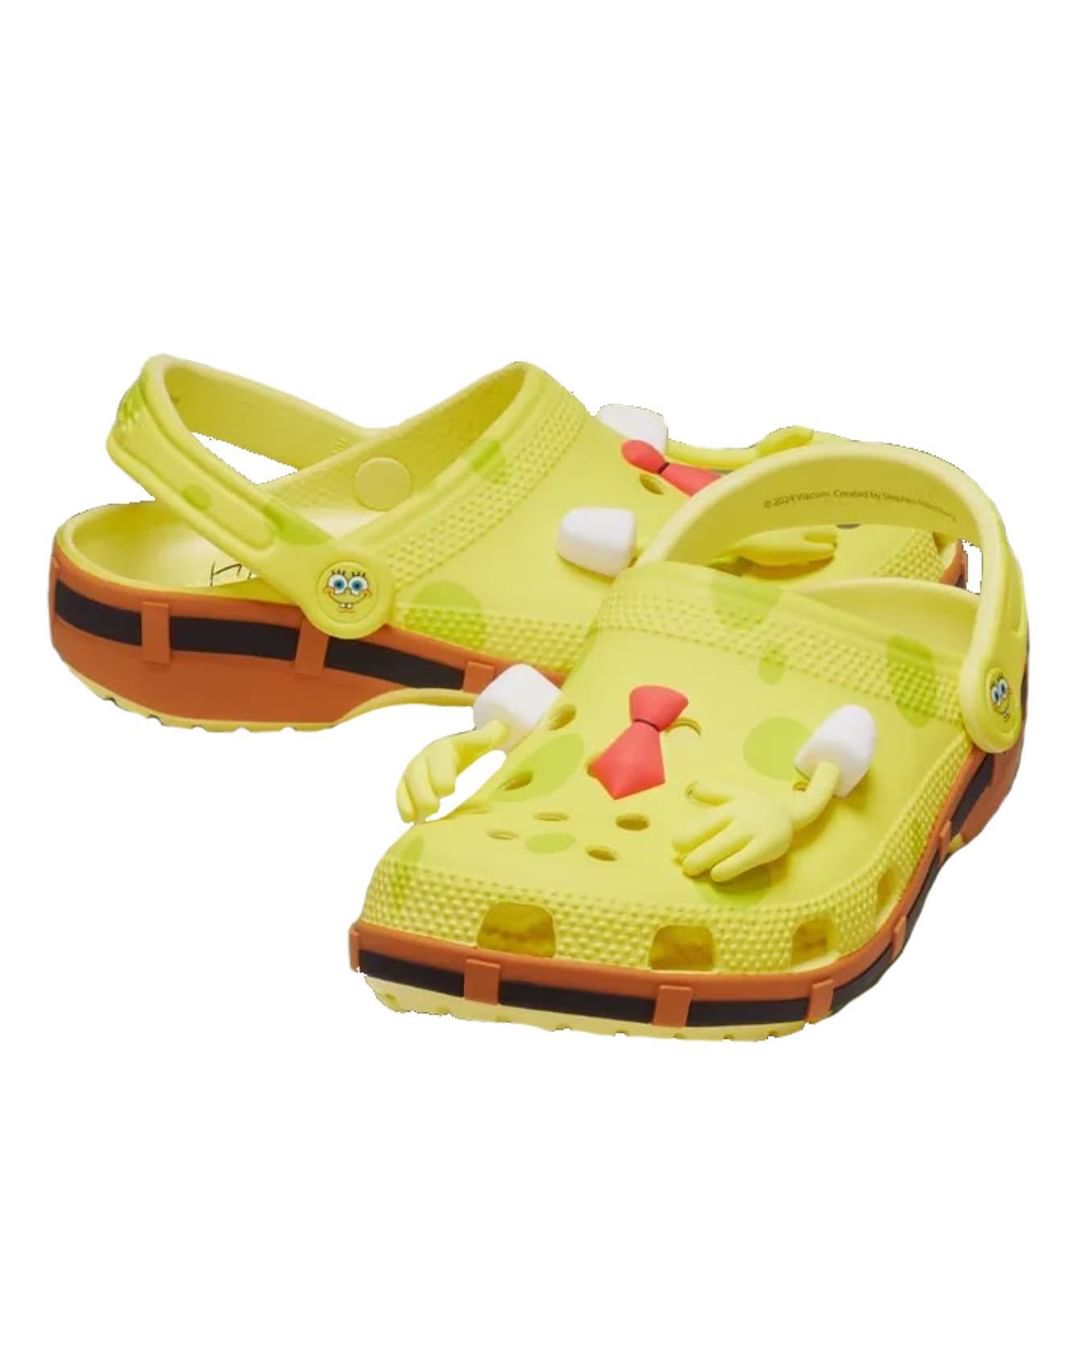 crocs, spongebob squarepants crocs, spongebob crocs